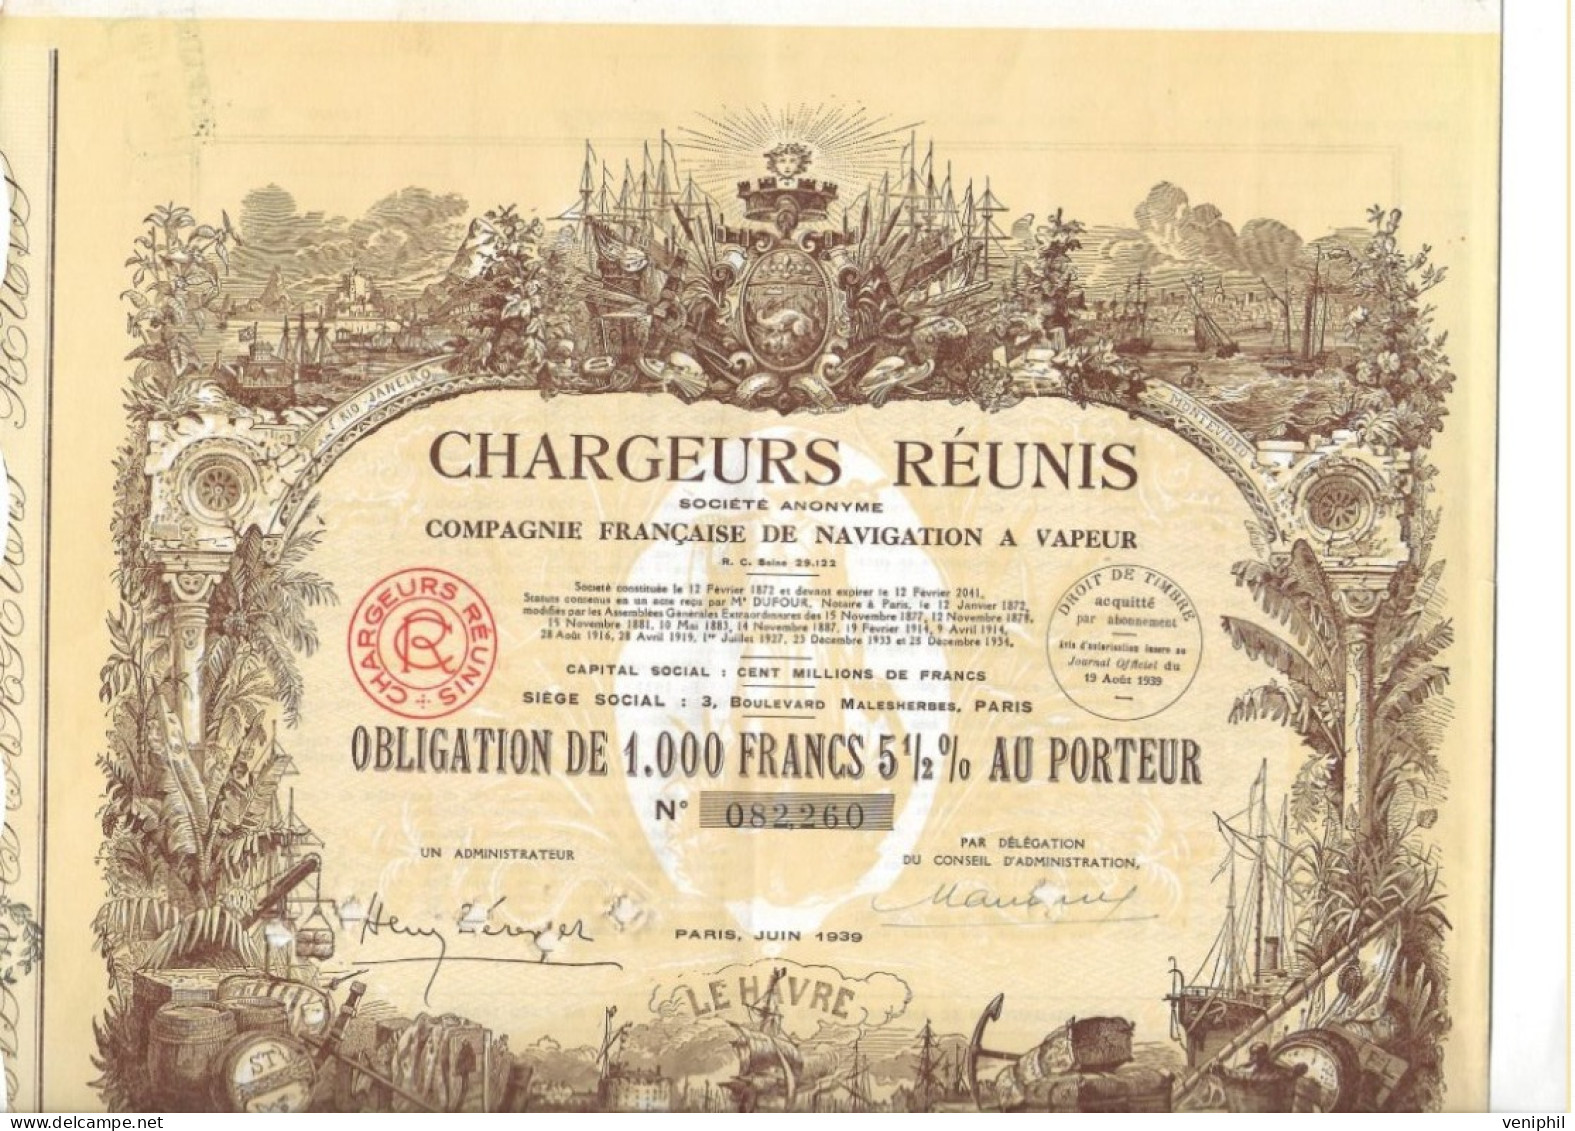 CHARGEURS REUNIS - COMPAGNIE FRANCAISE DE NAVIGATION A VAPEUR -OBLIGATION DE 1000 FRS- ANNEE 1939 - Navegación